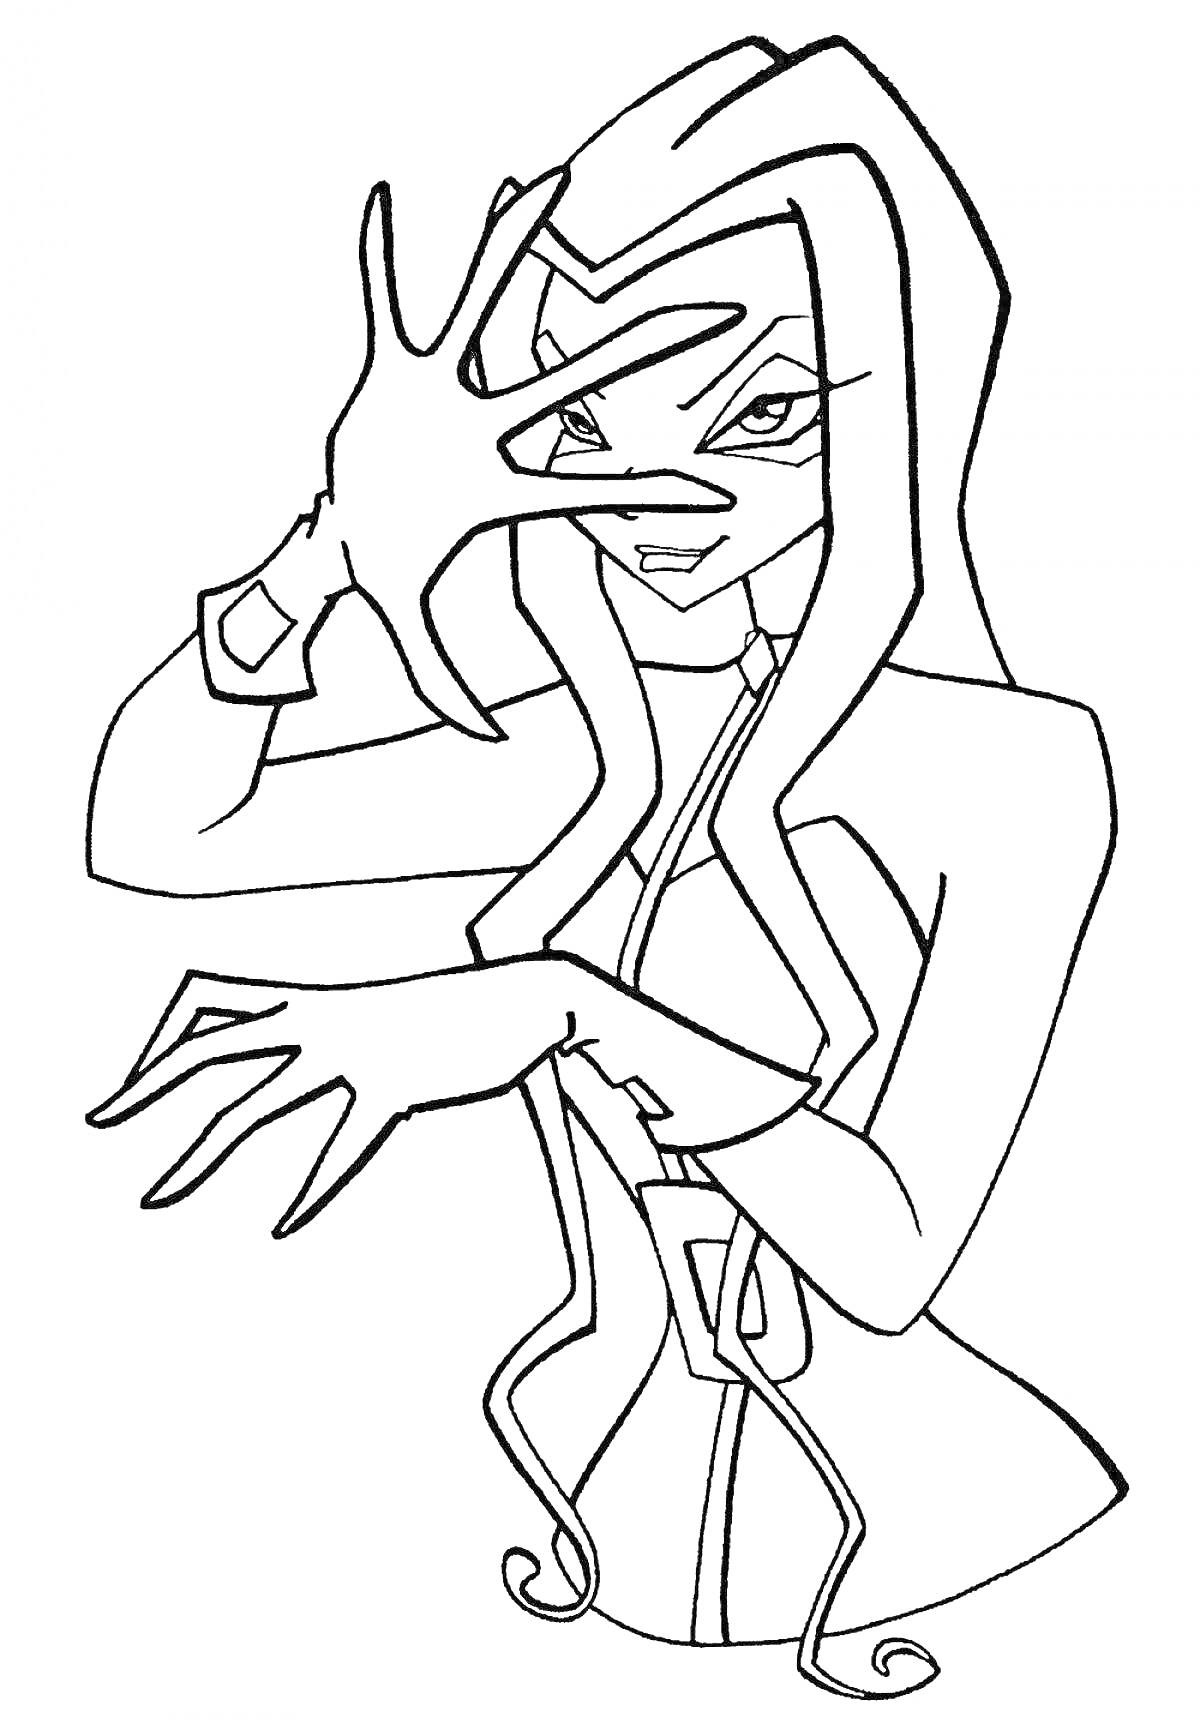 Раскраска Девушка с длинными волосами в магической позе, руки перед лицом